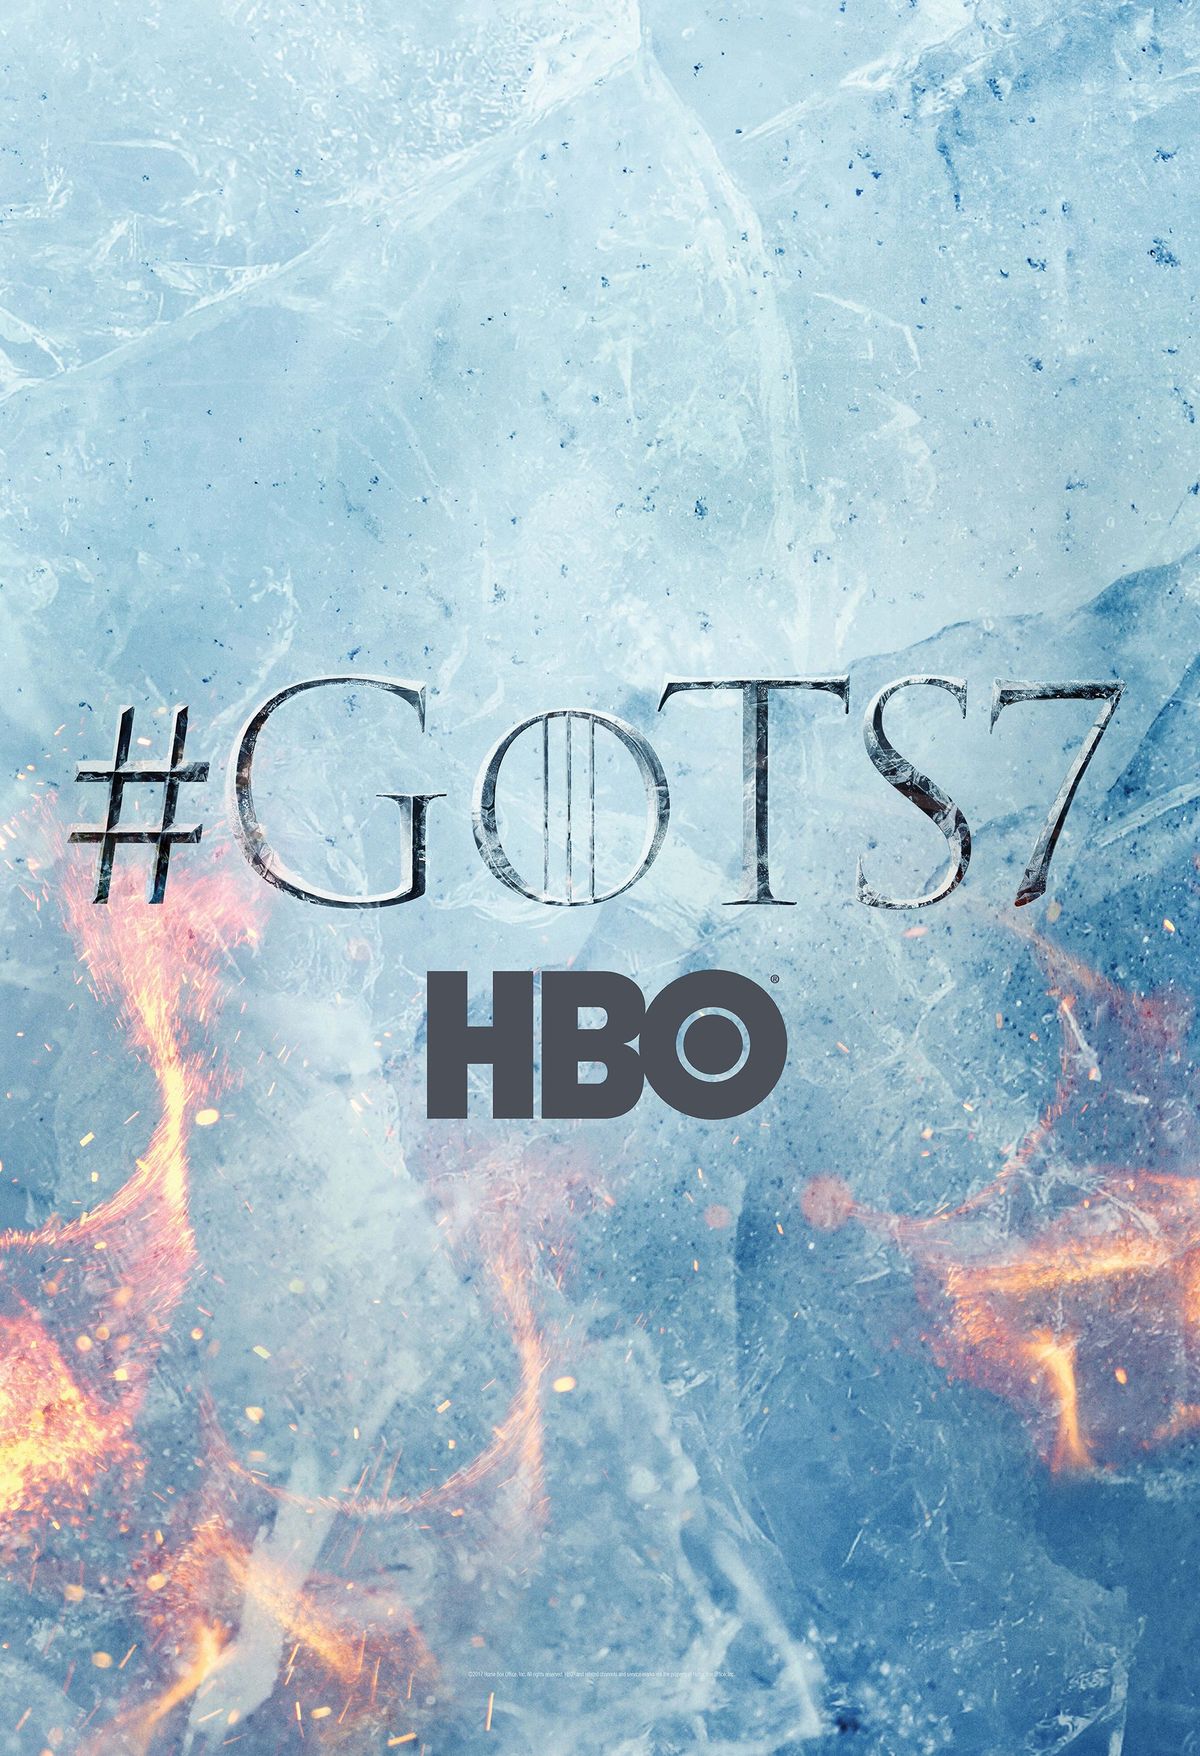 LOOK: Noul poster al sezonului 7 Sezonul 7 afișează focuri împotriva gheaței